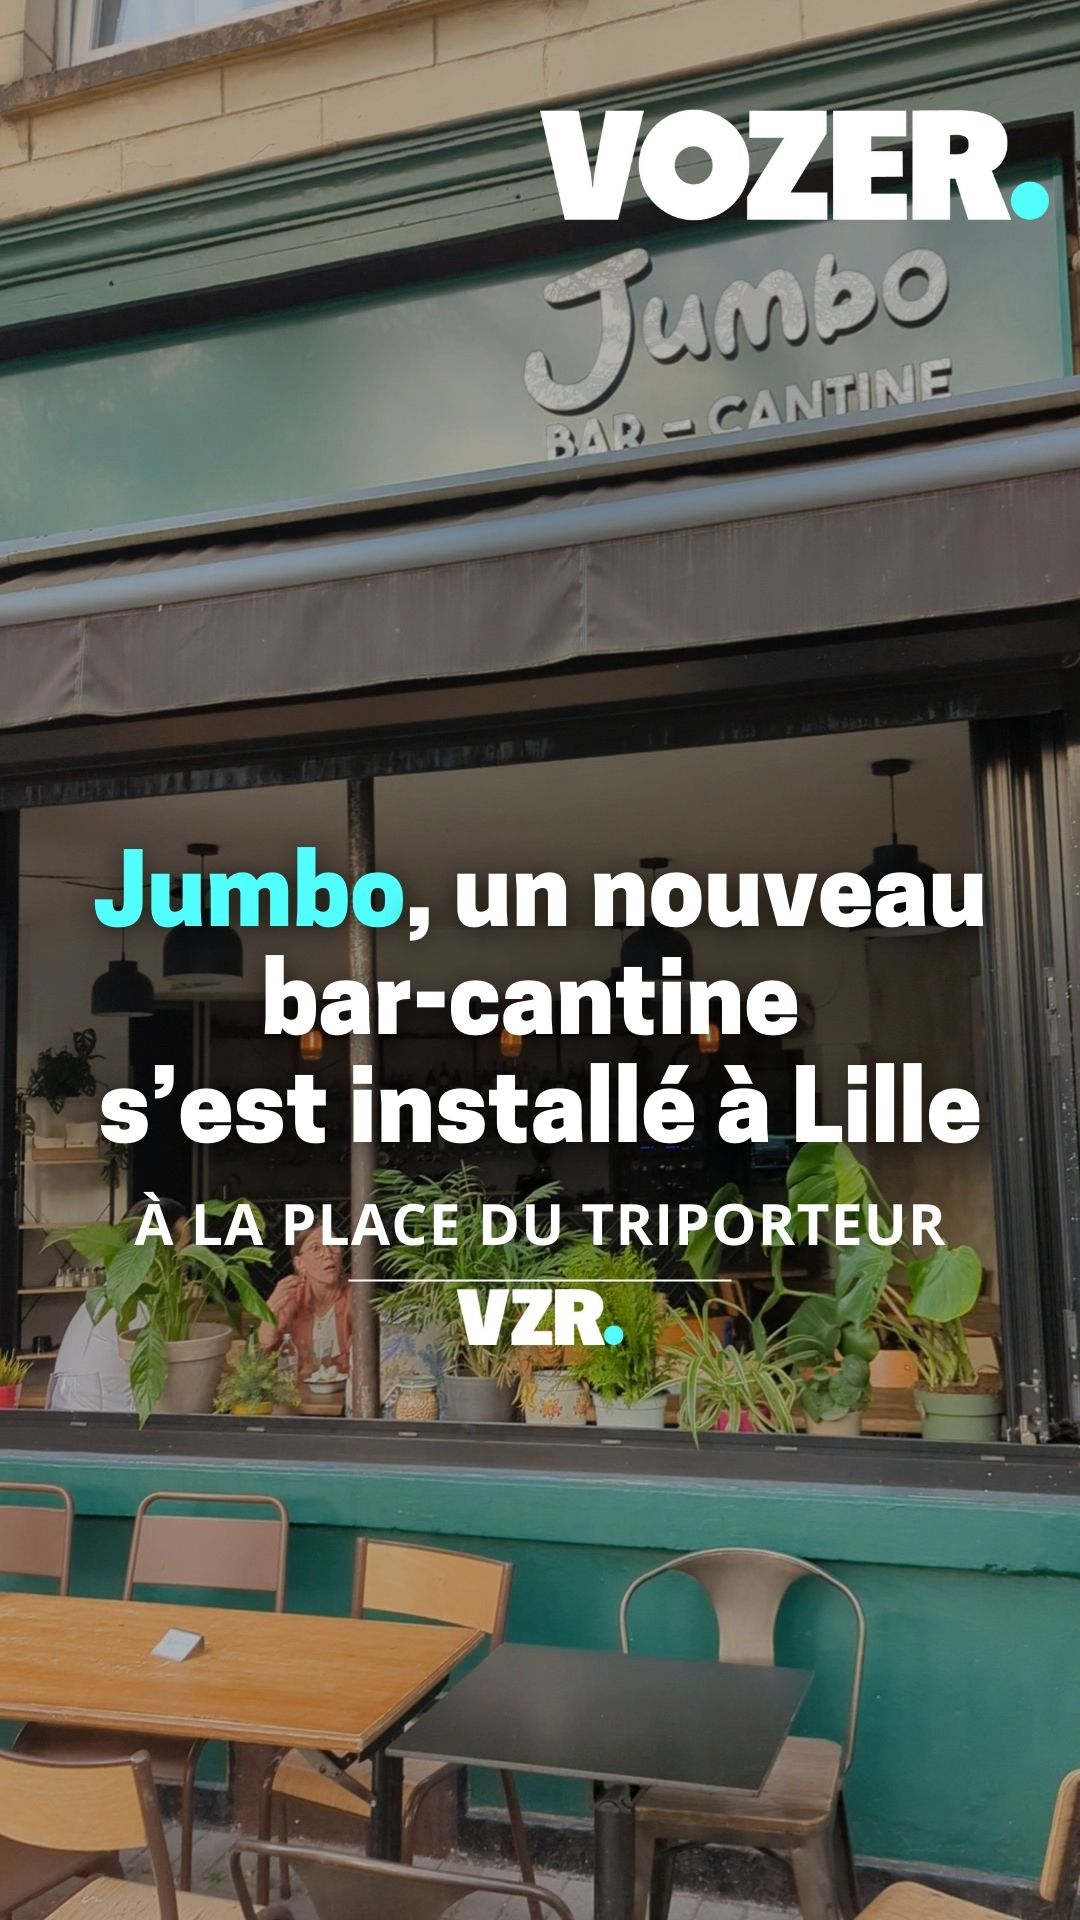 Jumbo, un nouveau bar-cantine s'est installé à Lille